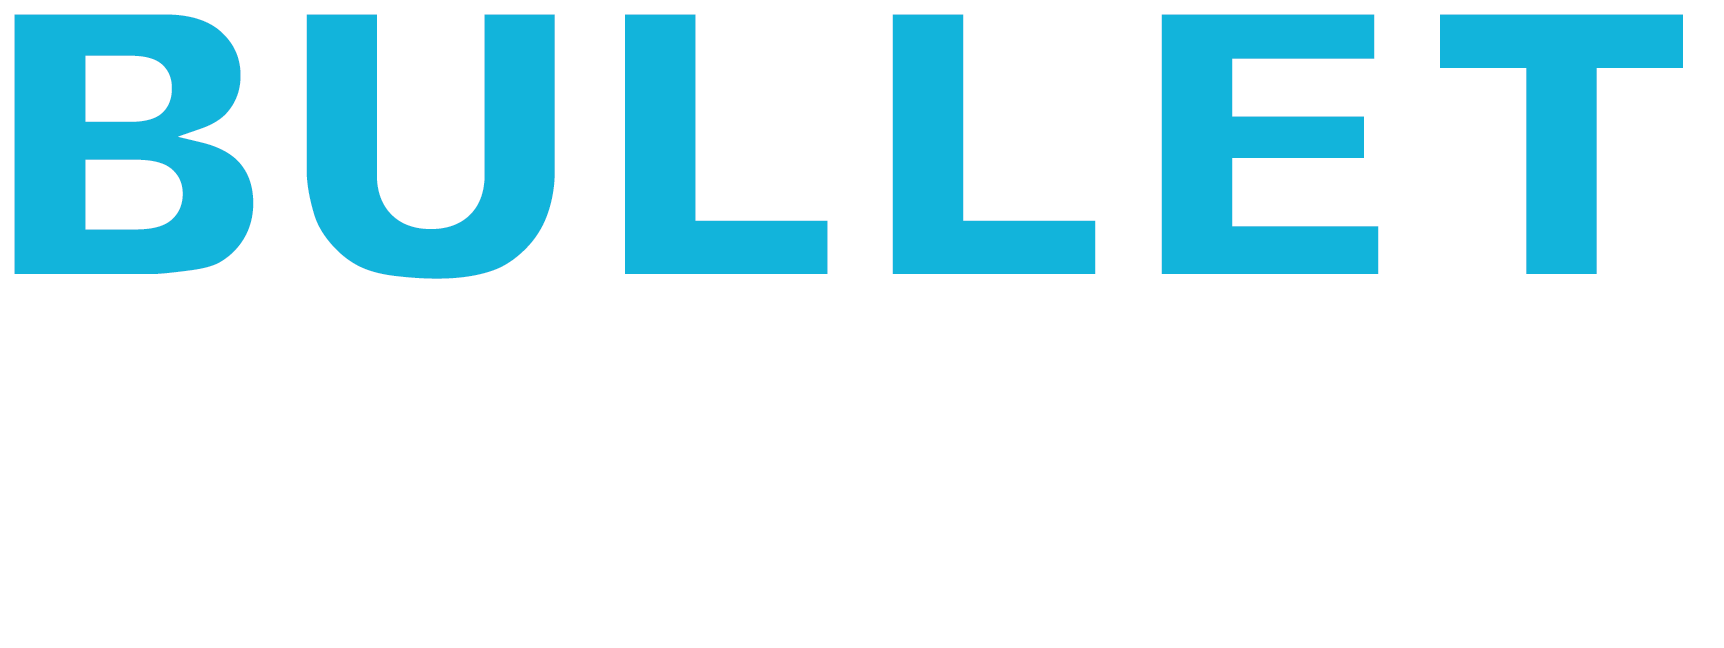 Bullet Hong Kong BBQ